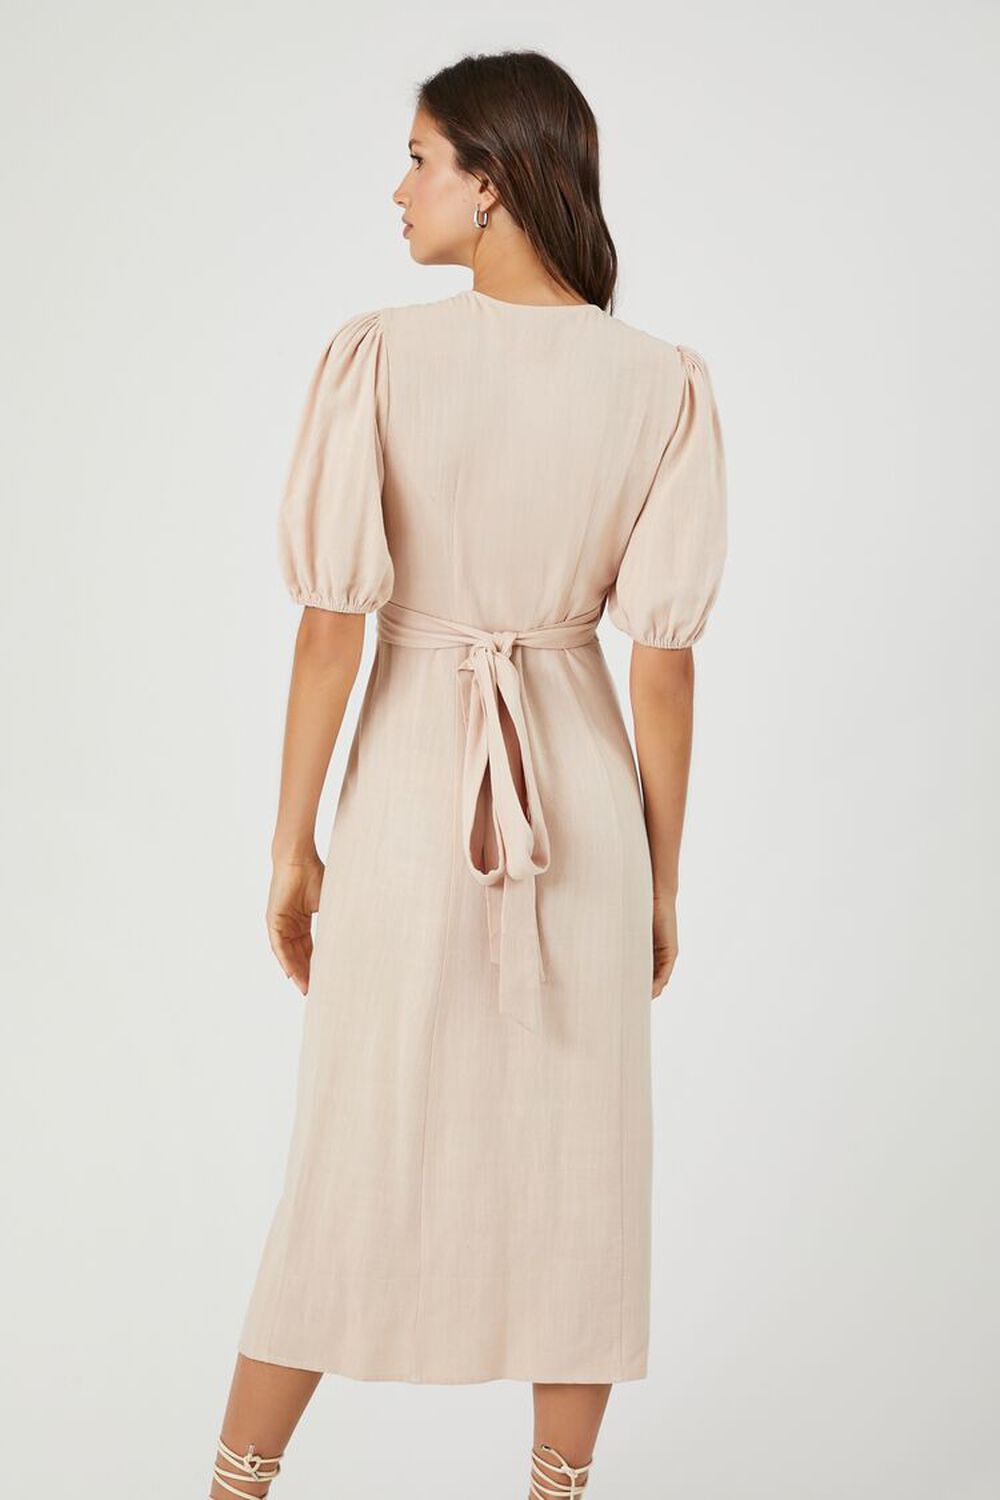 SANDSHELL Linen-Blend Wrap Midi Dress, image 3